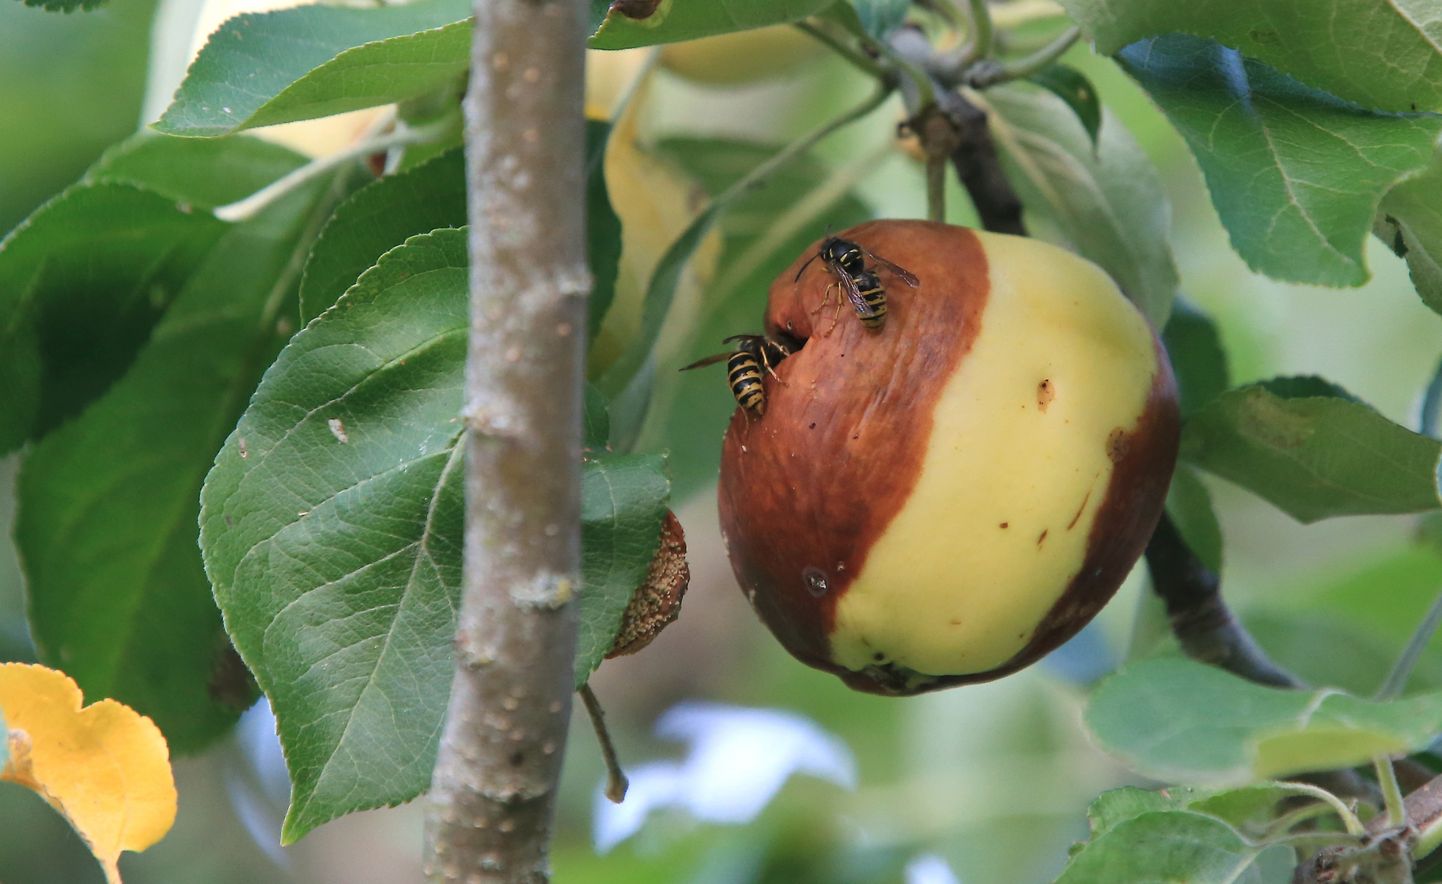 Tuttav pilt läinud suvel paljudes aedades. Kui õunakoi vastne õuna siseneb, vigastab ta vilja. Seesama imepisike vigastus laseb sisse puuviljamädaniku.